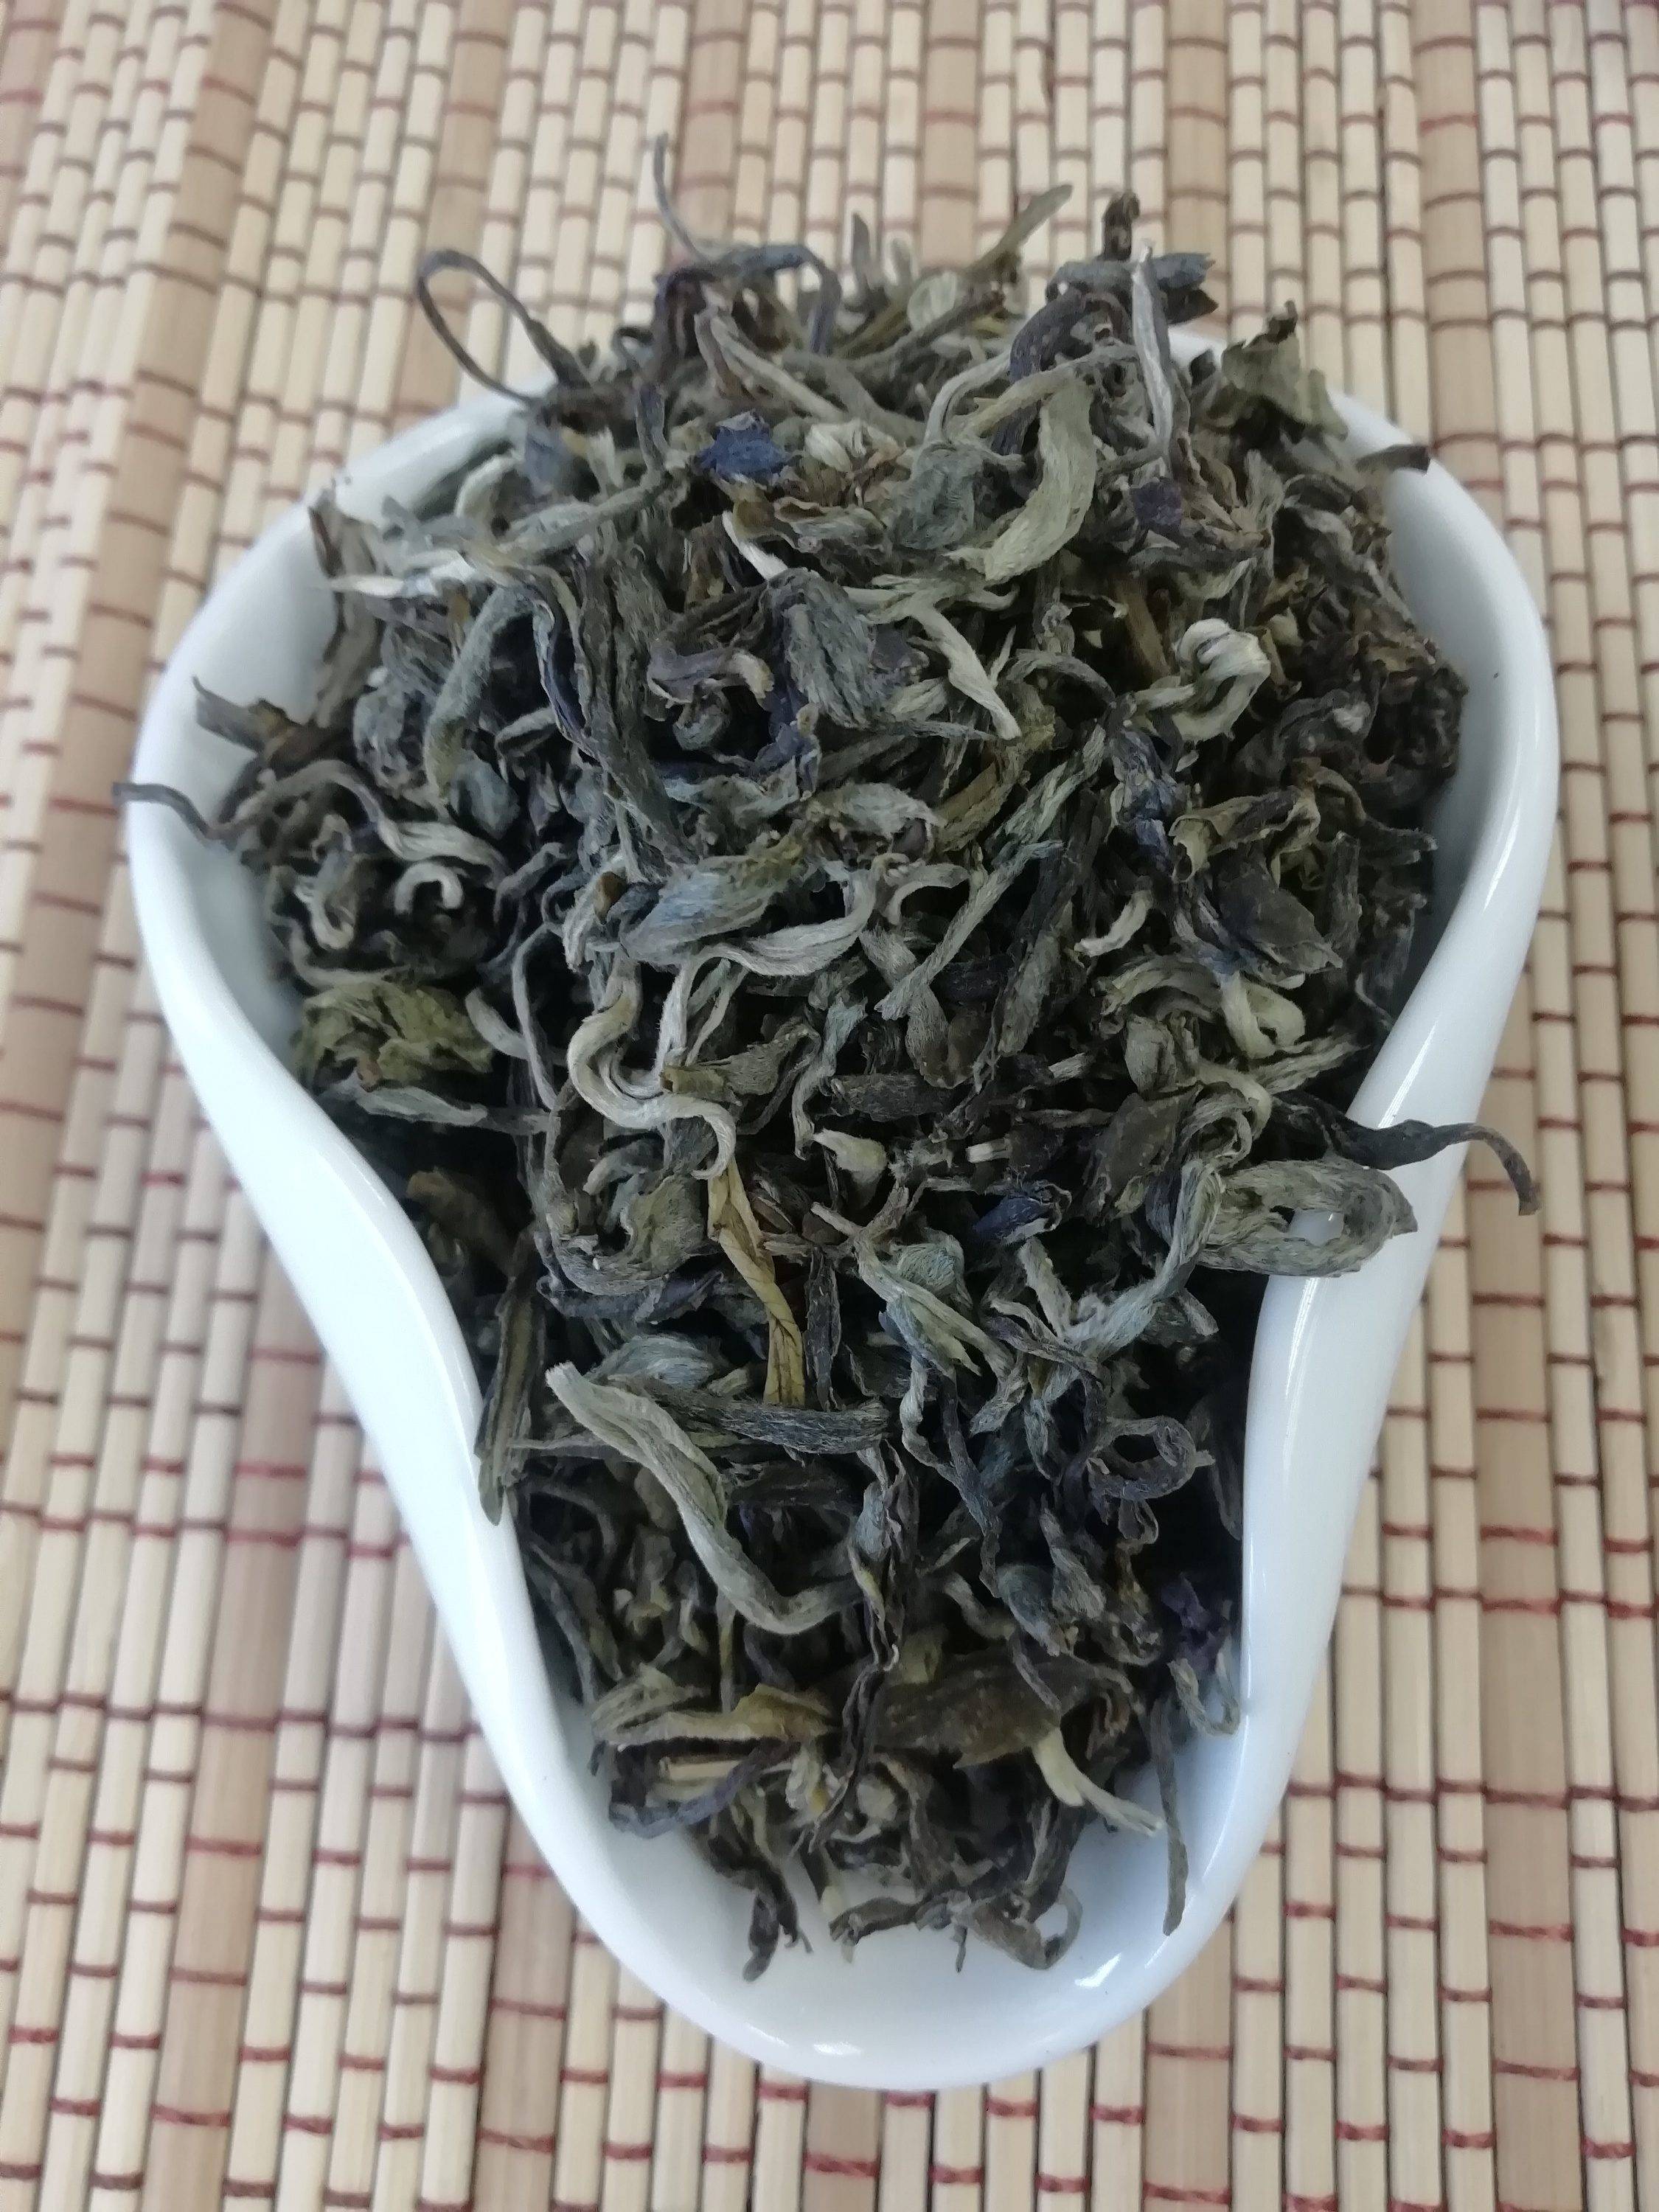 Бай мао хоу - чай белая обезьяна, элитный сорт китайского зелёного чая